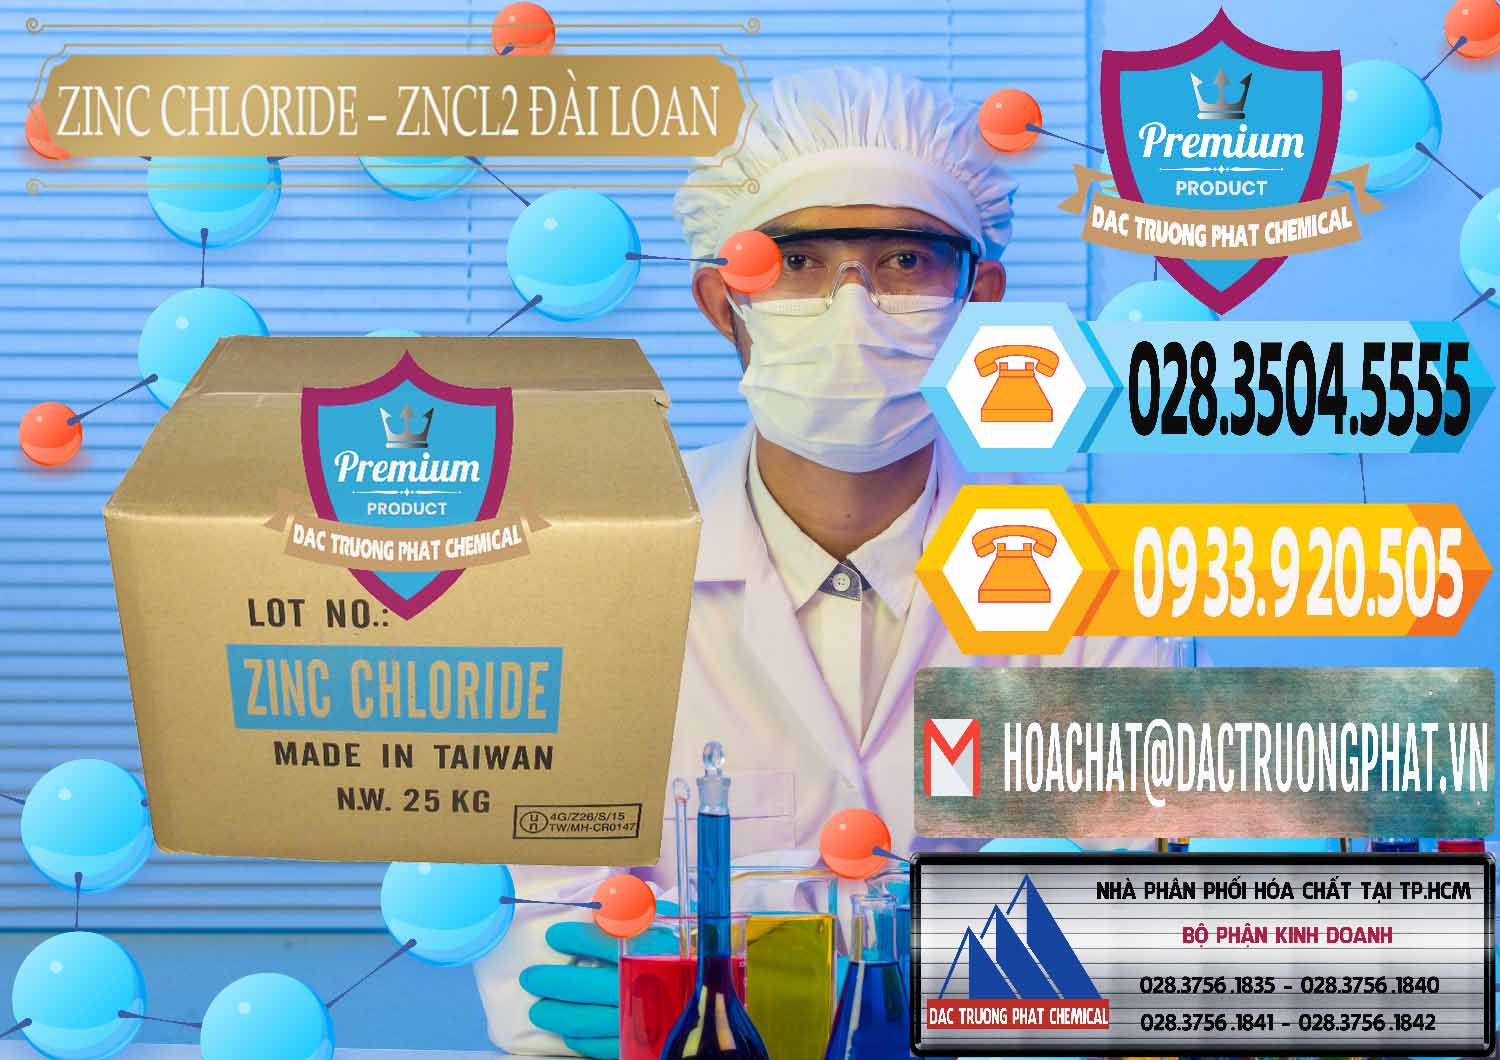 Nơi chuyên bán & cung ứng Zinc Chloride - ZNCL2 96% Đài Loan Taiwan - 0178 - Chuyên cung cấp - kinh doanh hóa chất tại TP.HCM - hoachattayrua.net